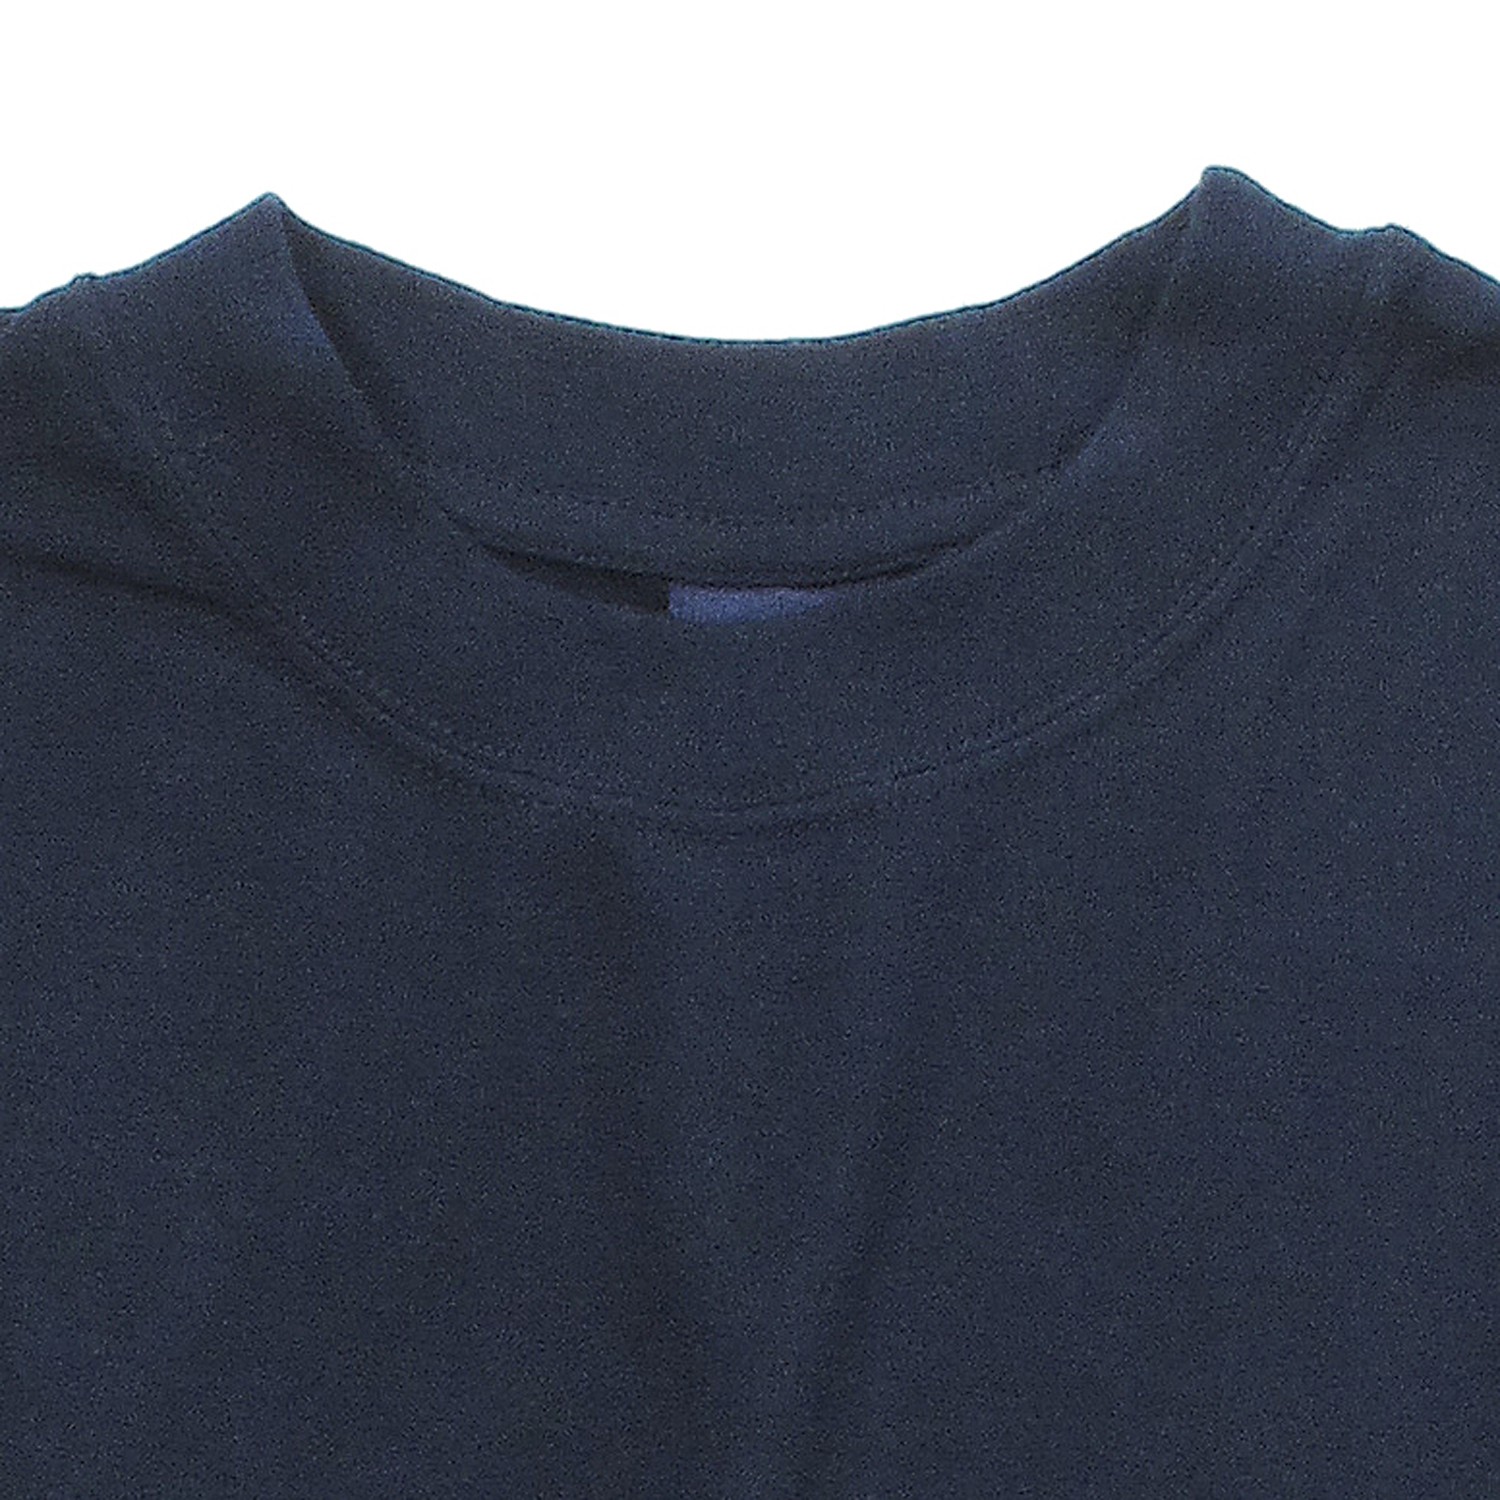 T-shirt bleu marine de Kapart // grandes tailles jusqu'au 8XL